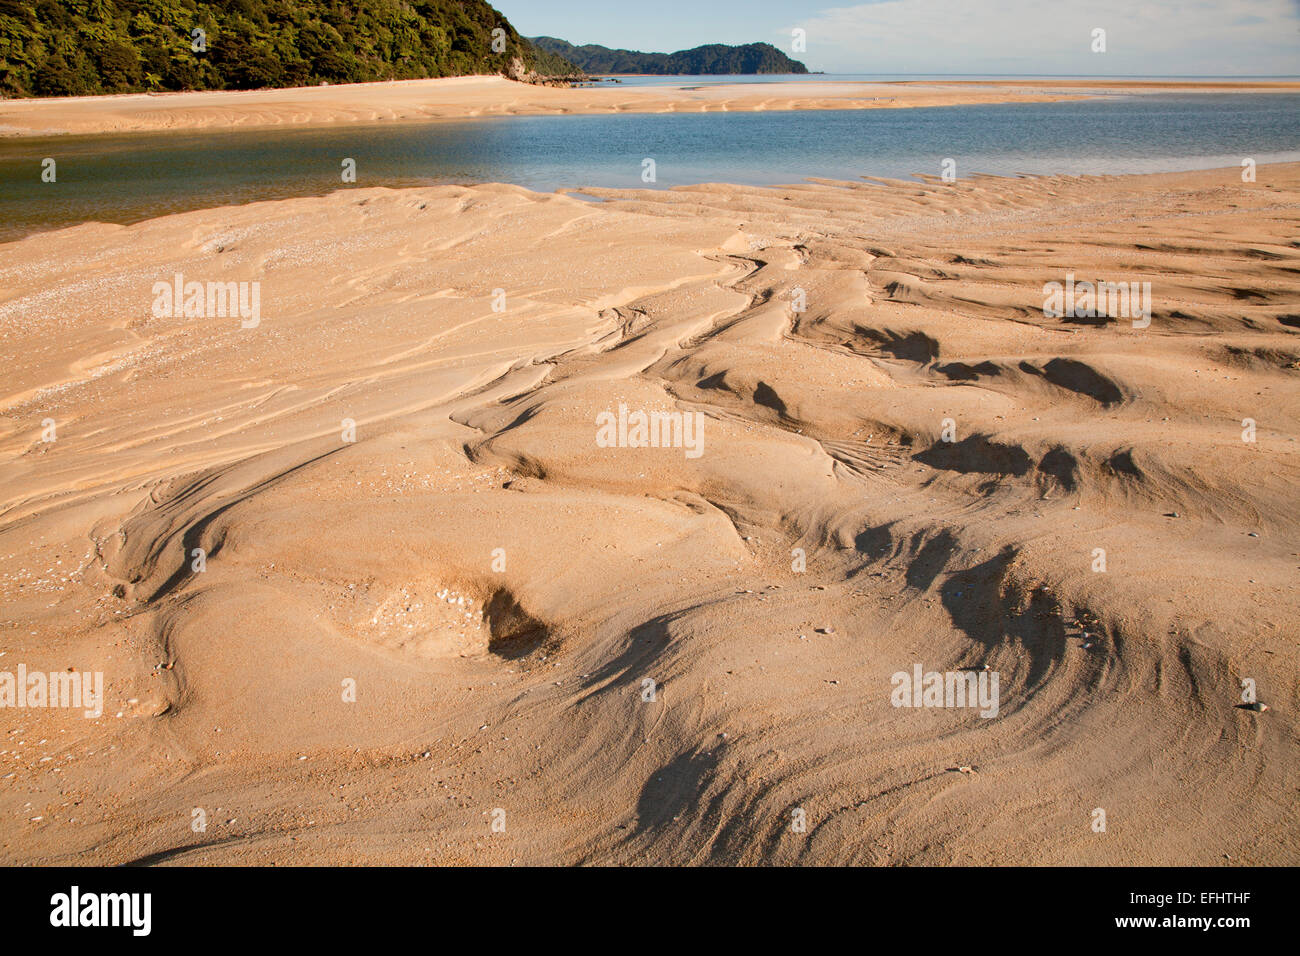 Banc de sable, avec des rides de sable doré, d'Abel Tasman Awaroa, Piste, grandes promenades côtières, au nord-ouest de l'île du Sud, Abel Ta Banque D'Images